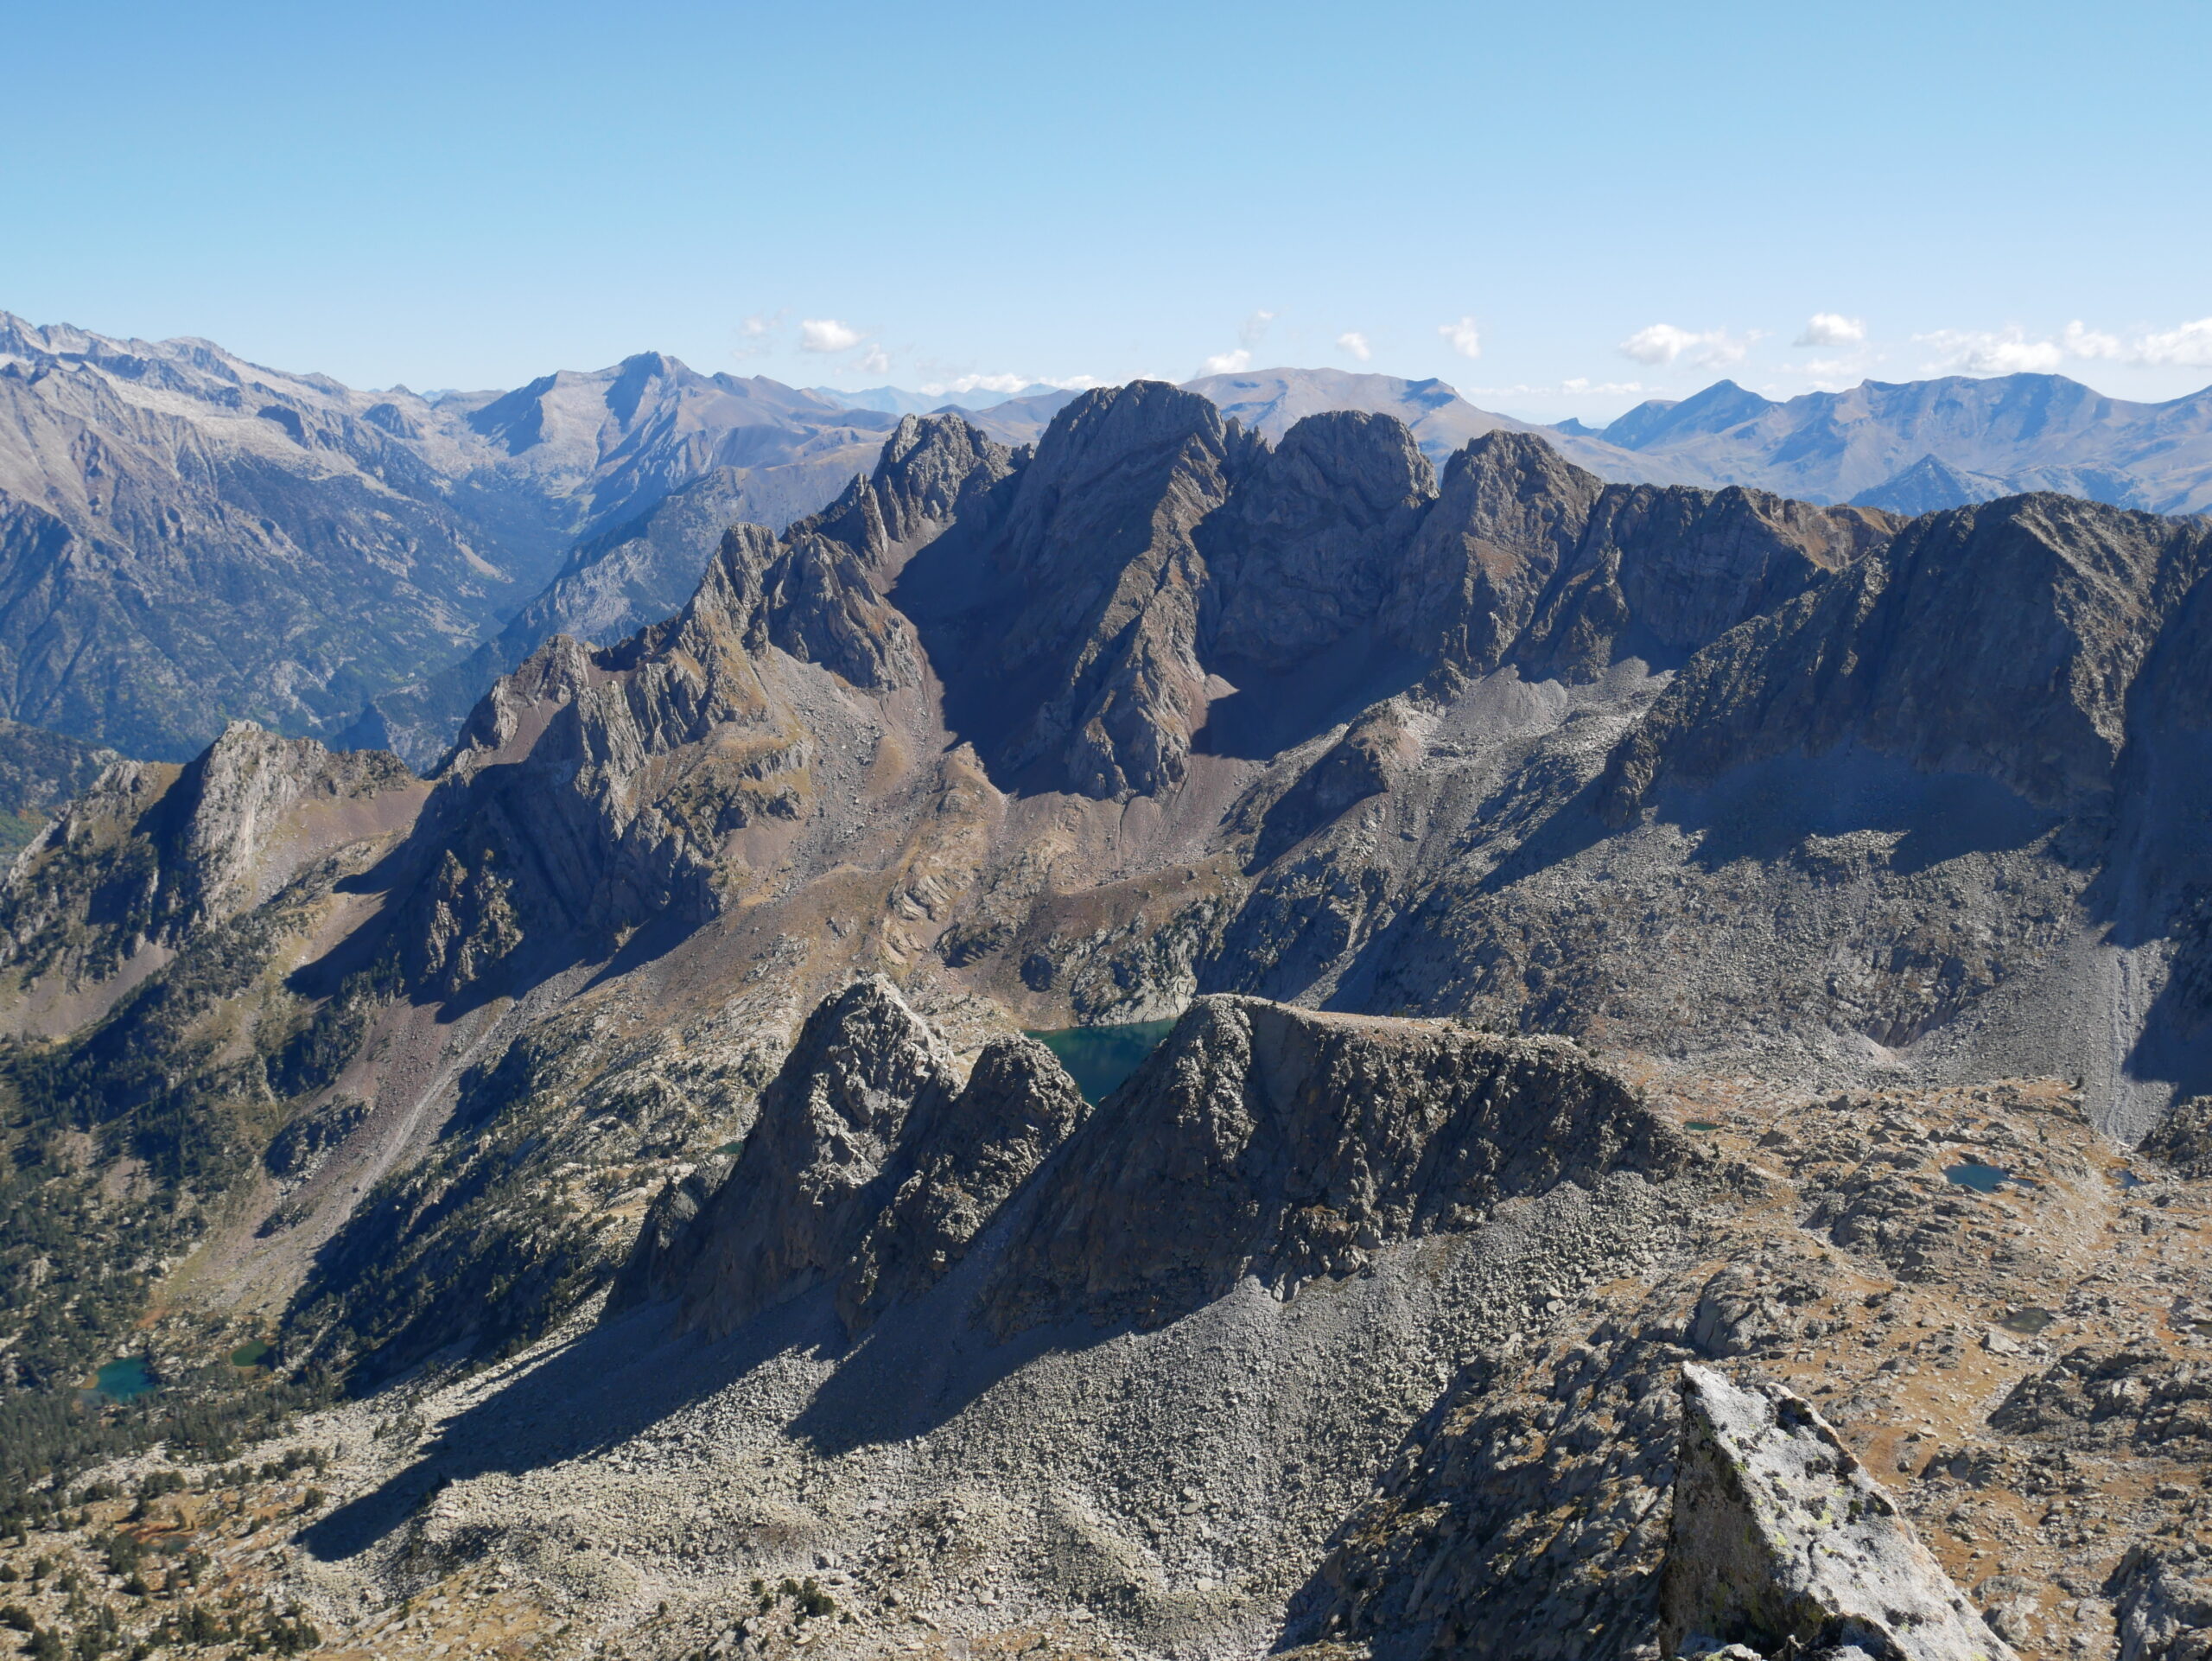 Tuca del Mon (2652 m) – Tuca del Chinebro (2732 m) – Agulla del Chinebro (2718 m) – Pico Batisielles Sur (2846 m) – Pico Batisielles Norte (2804 m) – Montidiego (2761 m) – Agulles de Posets (2801 m – 2763 m) depuis le parking d’Espigantosa